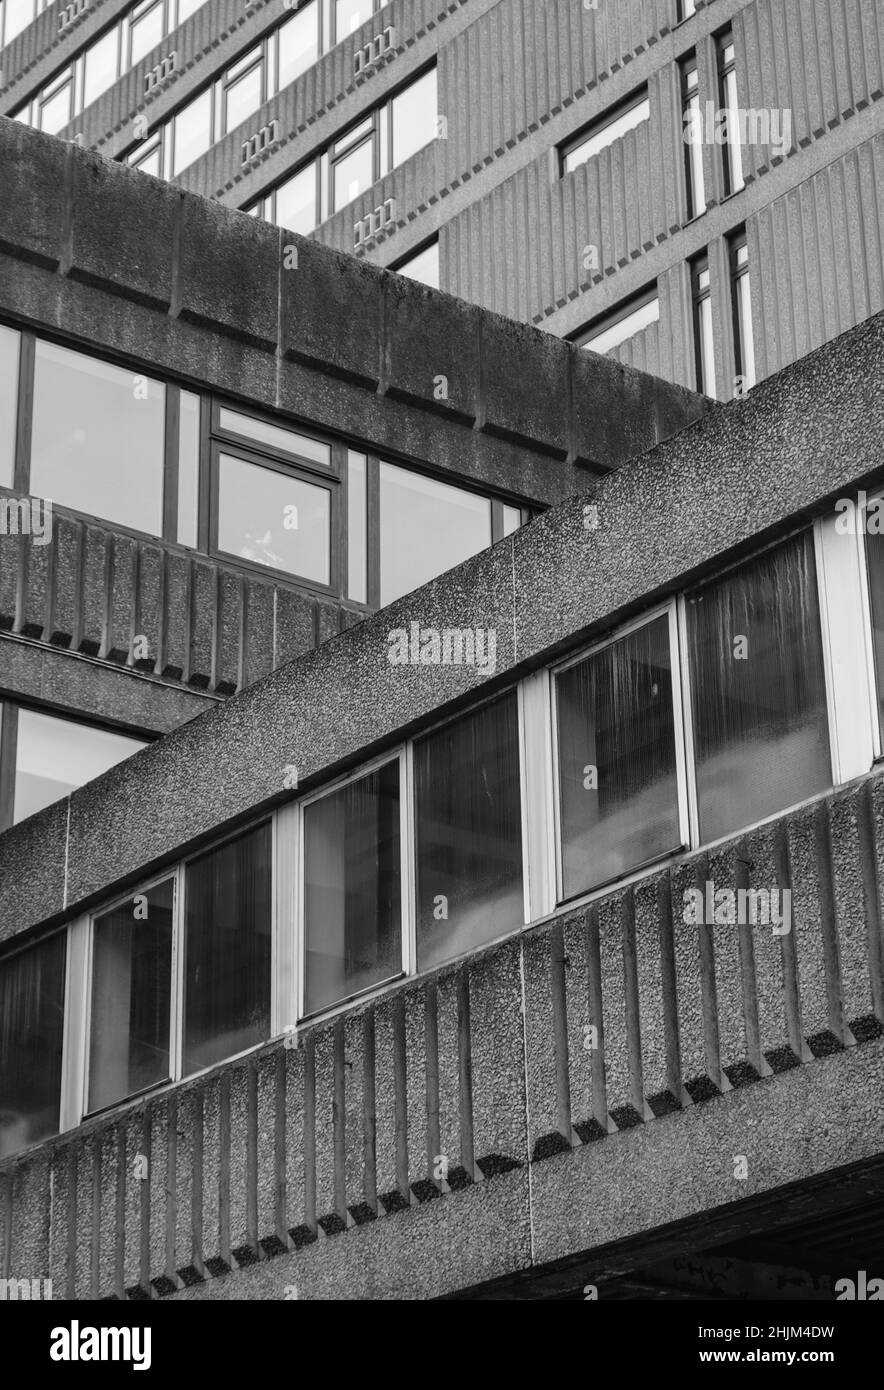 Sinistre architecture brutaliste monochrome d'après-guerre dans Une ville britannique (Glasgow) Banque D'Images